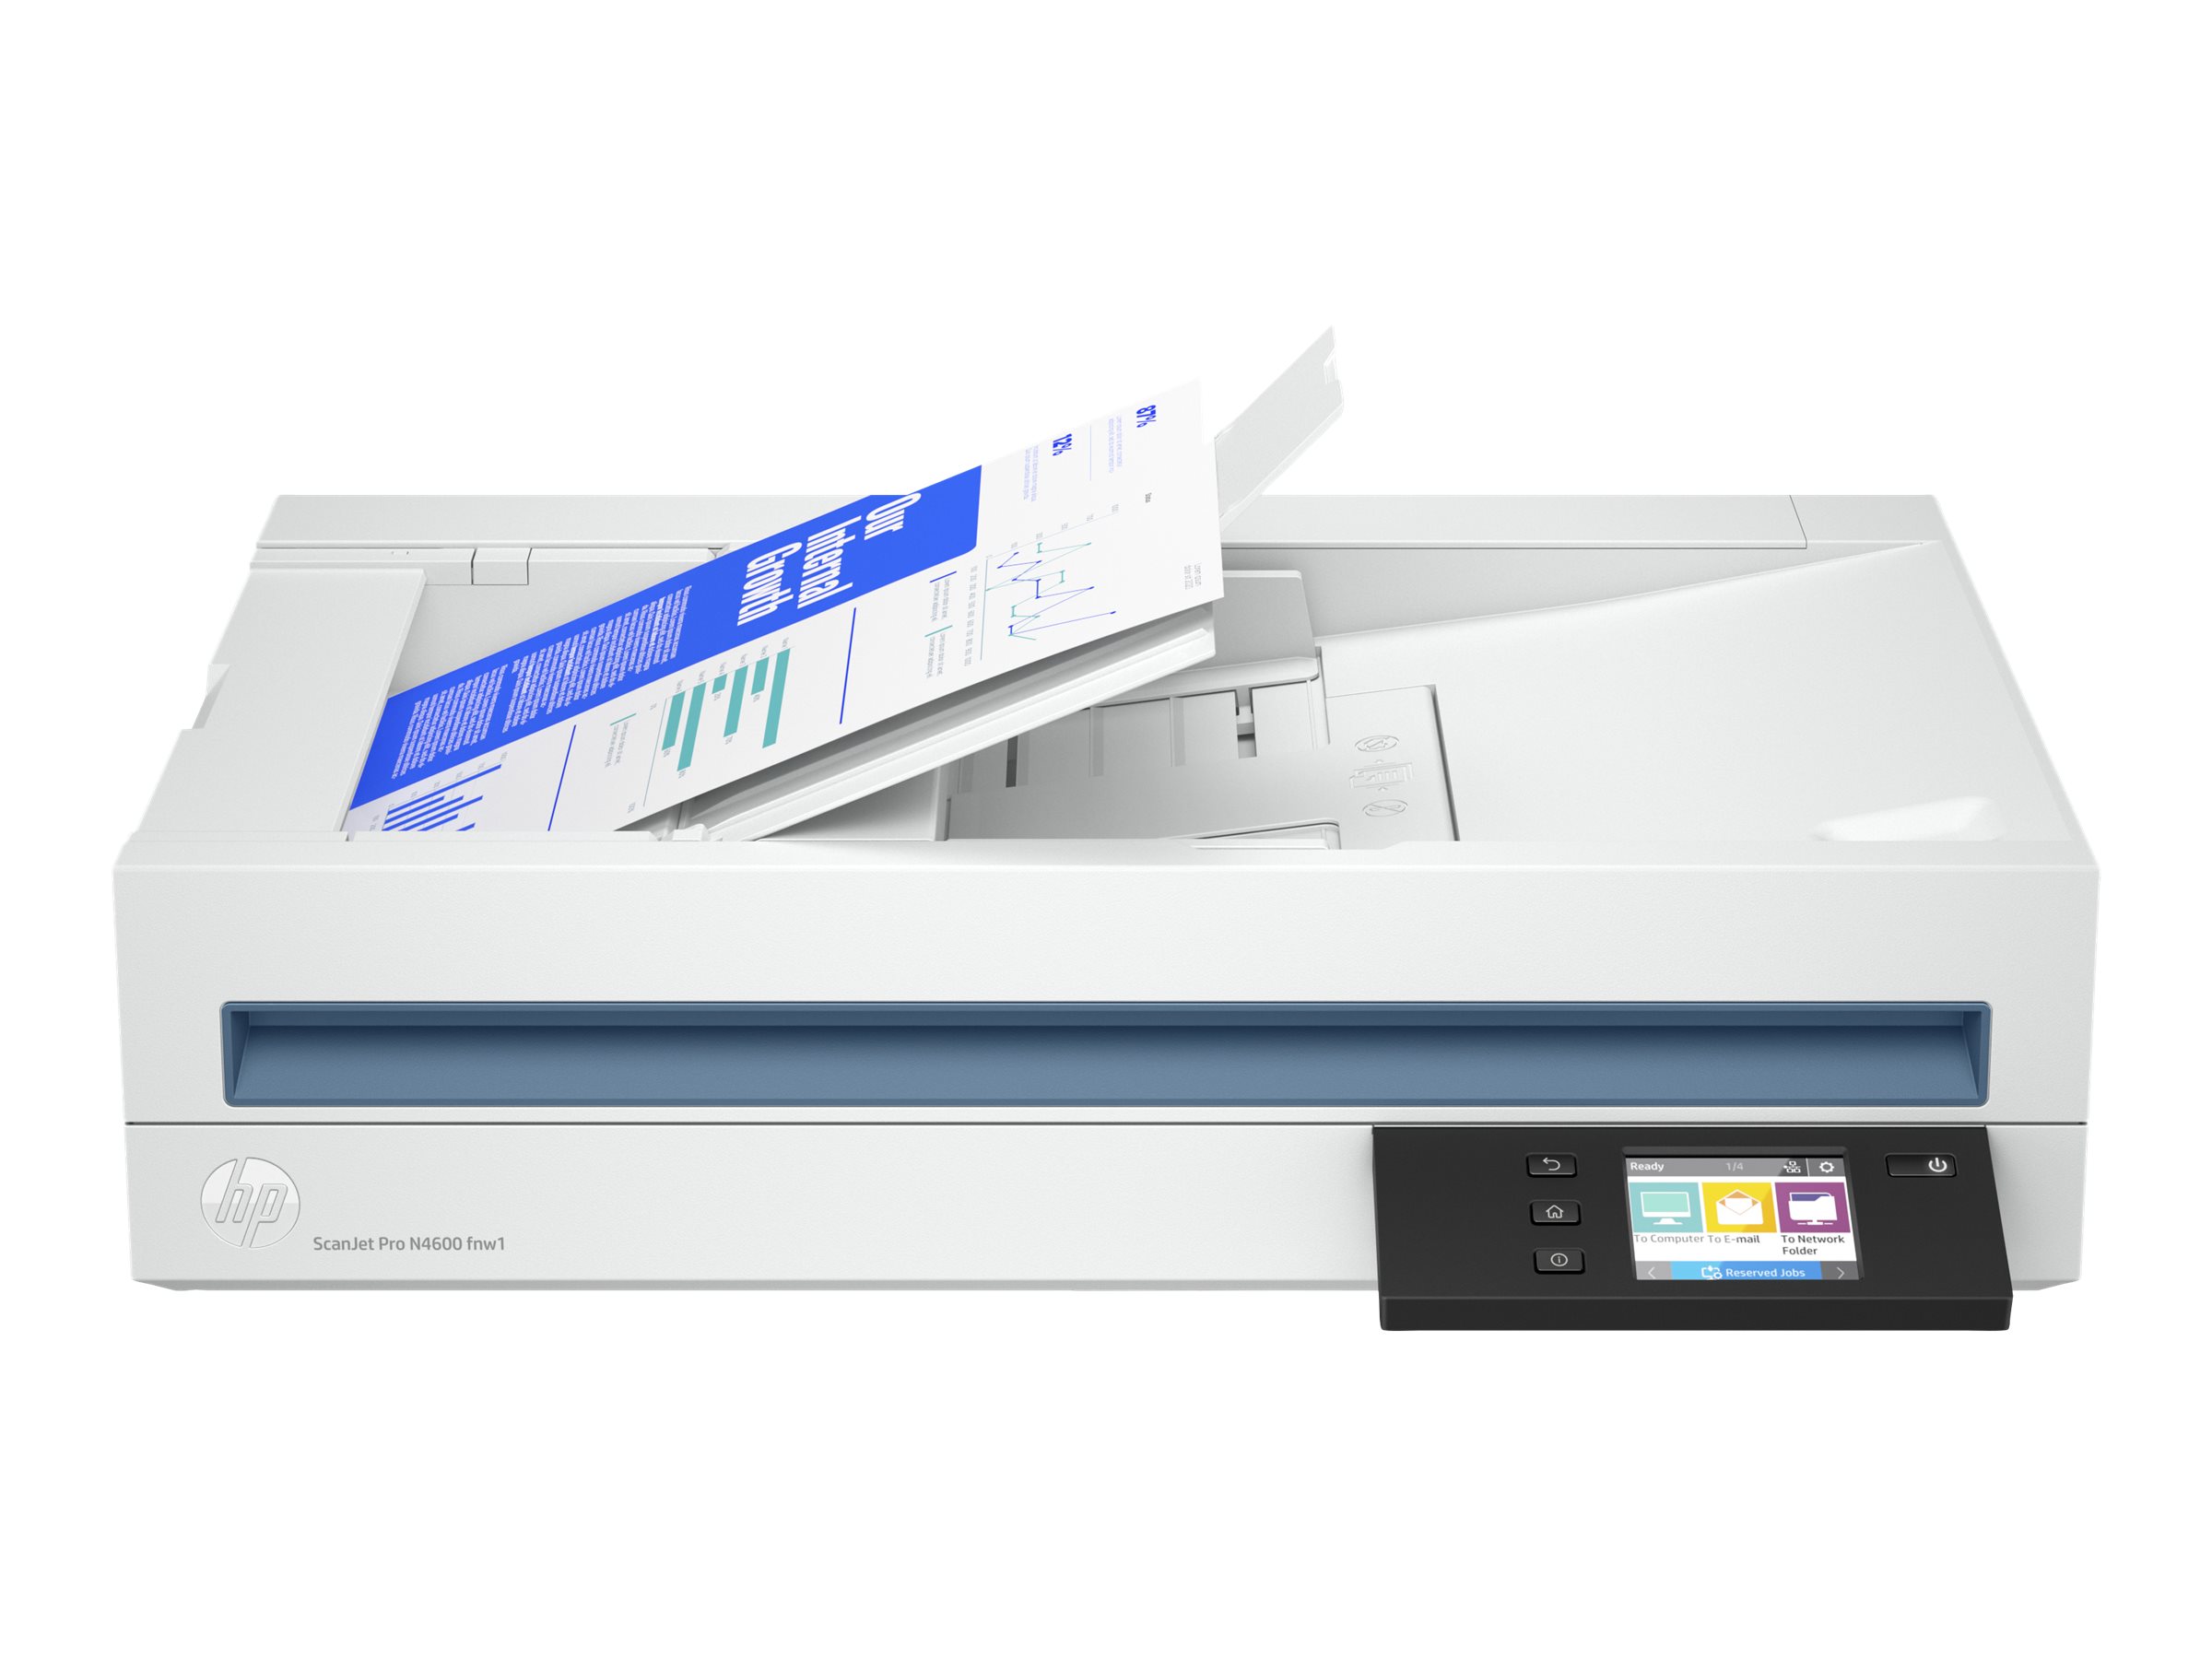 HP Scanjet Pro N4600 fnw1 - Scanner de documents - Capteur d'images de contact (CIS) - Recto-verso - 216 x 5362 mm - 600 dpi x 1200 dpi - jusqu'à 40 ppm (mono) / jusqu'à 40 ppm (couleur) - Chargeur automatique de documents (100 feuilles) - jusqu'à 6000 pages par jour - USB 3.0, Gigabit LAN, Wi-Fi(n) - 20G07A#B19 - Scanneurs de documents